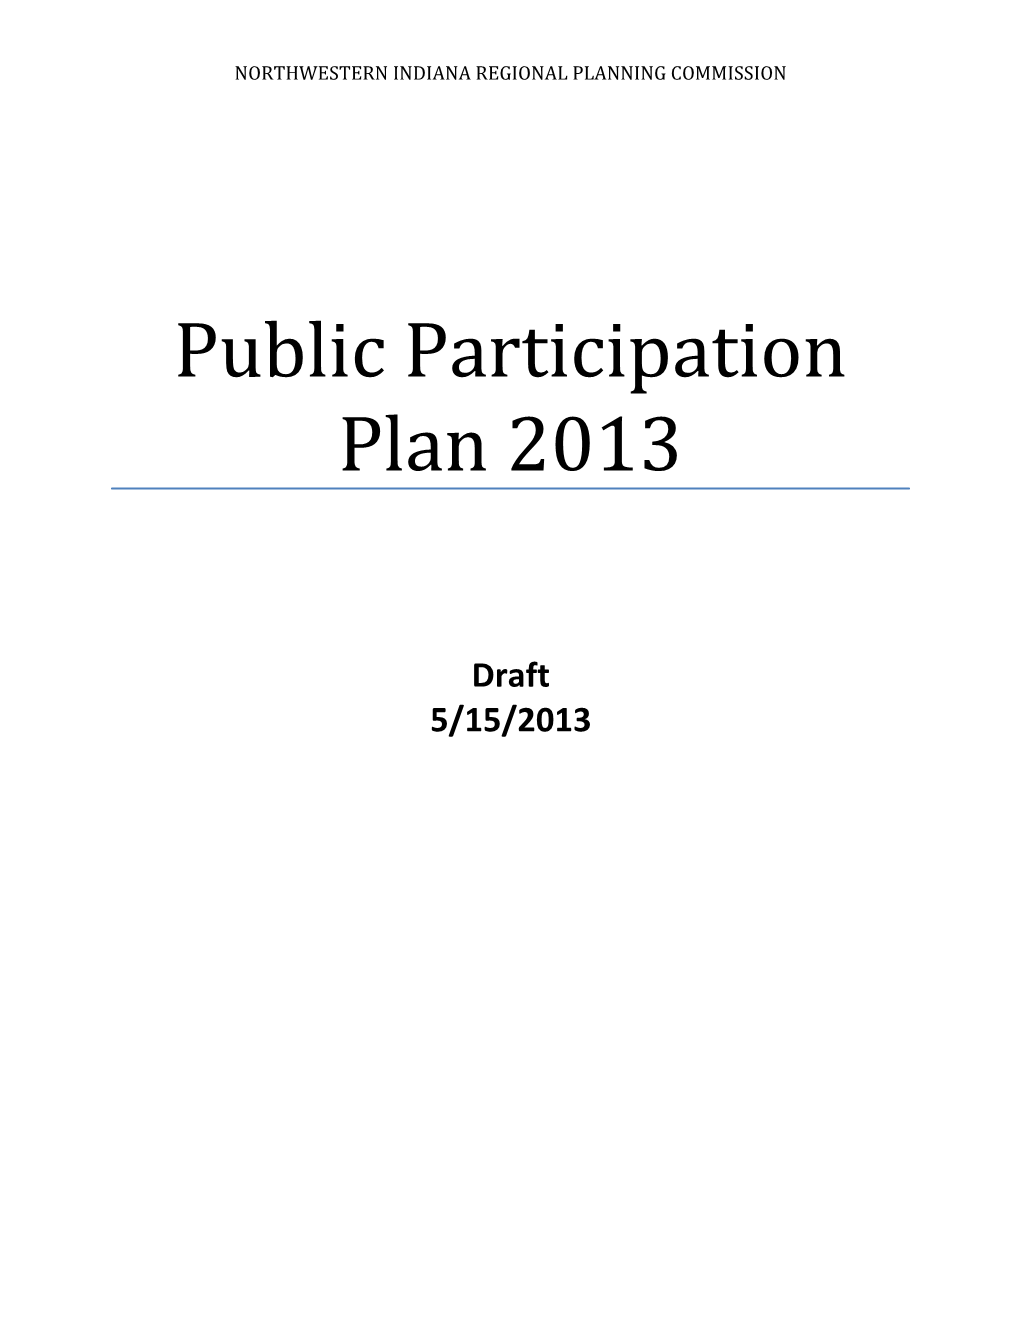 Public Participation Plan 2012